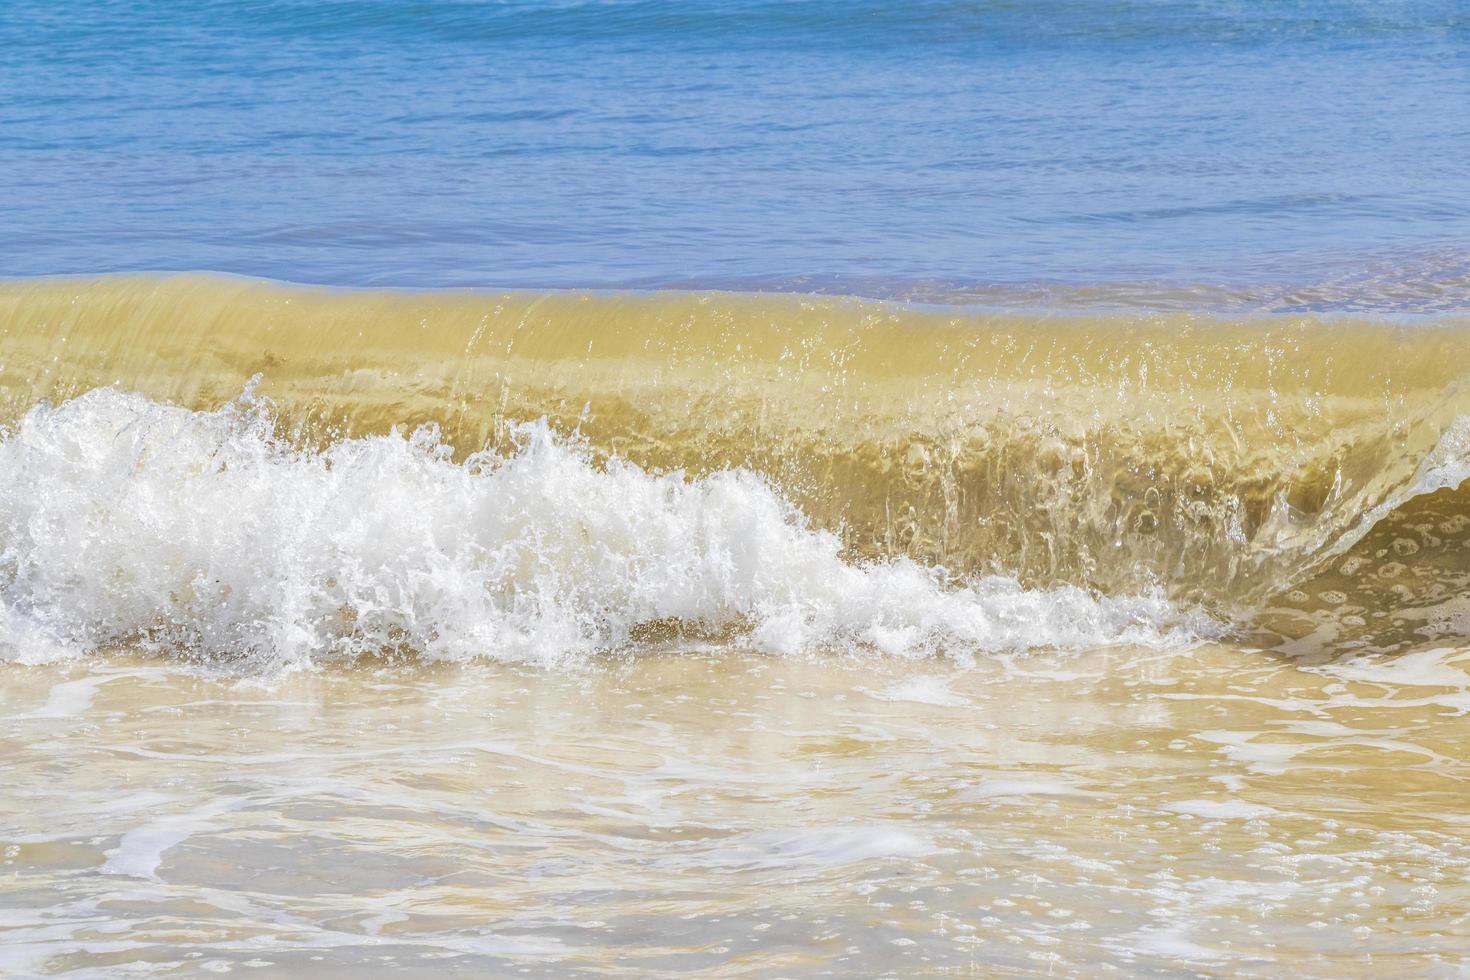 tropische mexikanische strandwellen türkises wasser playa del carmen mexiko. foto